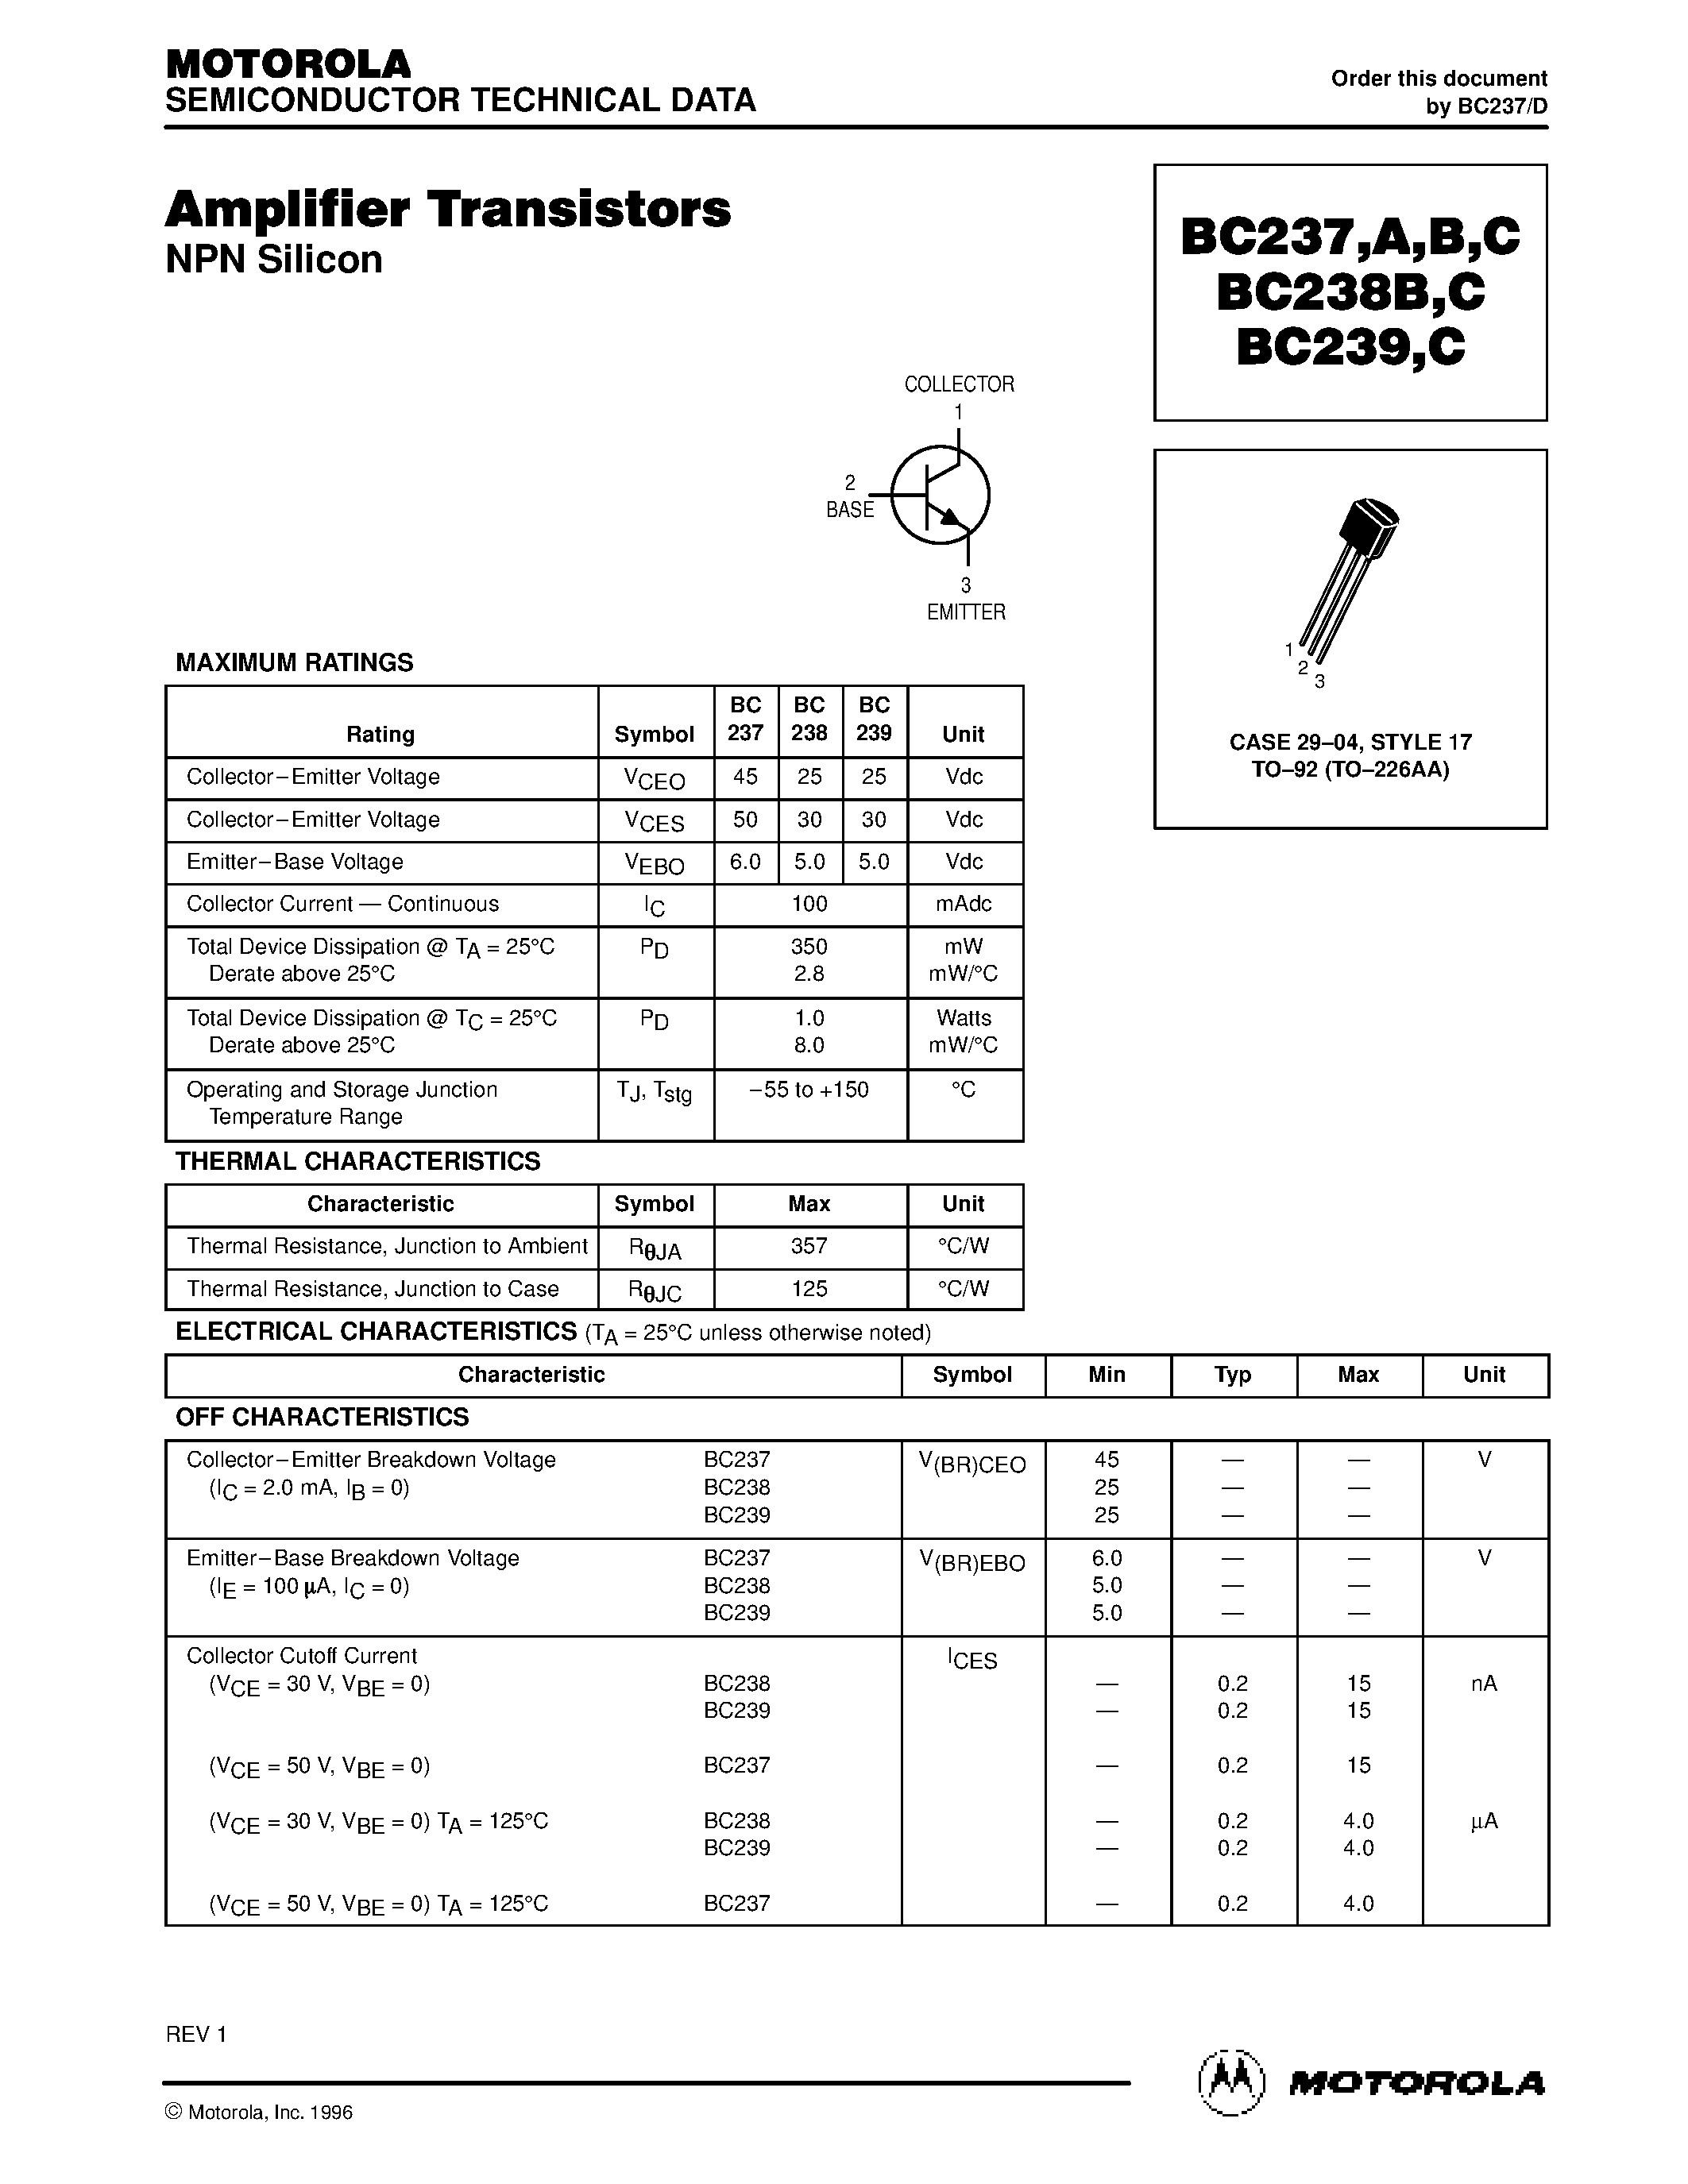 Даташит BC238C - Amplifier Transistors страница 1